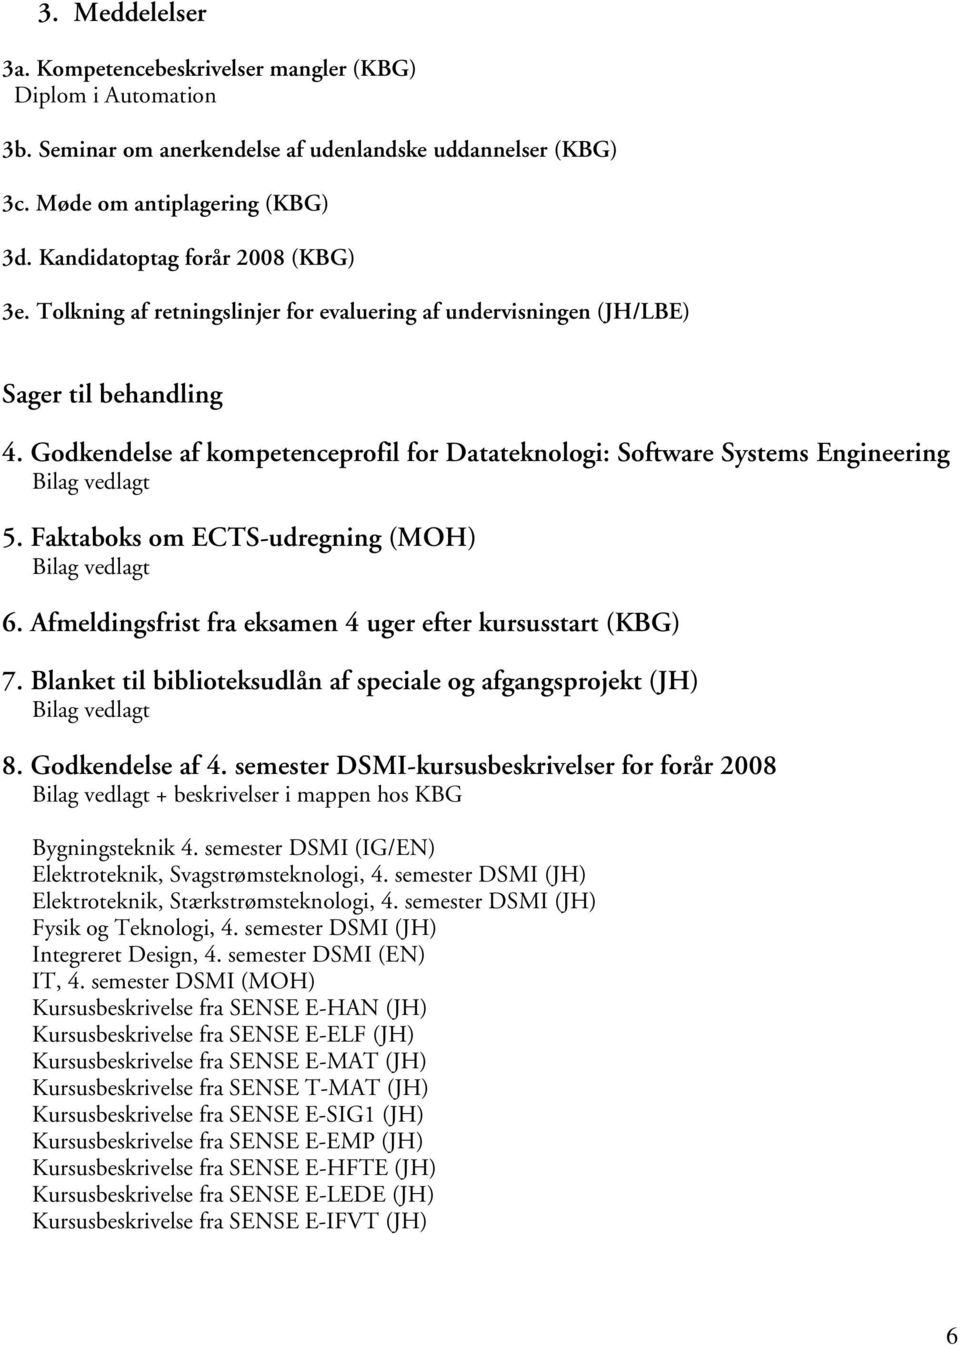 Godkendelse af kompetenceprofil for Datateknologi: Software Systems Engineering 5. Faktaboks om ECTS-udregning (MOH) 6. Afmeldingsfrist fra eksamen 4 uger efter kursusstart (KBG) 7.